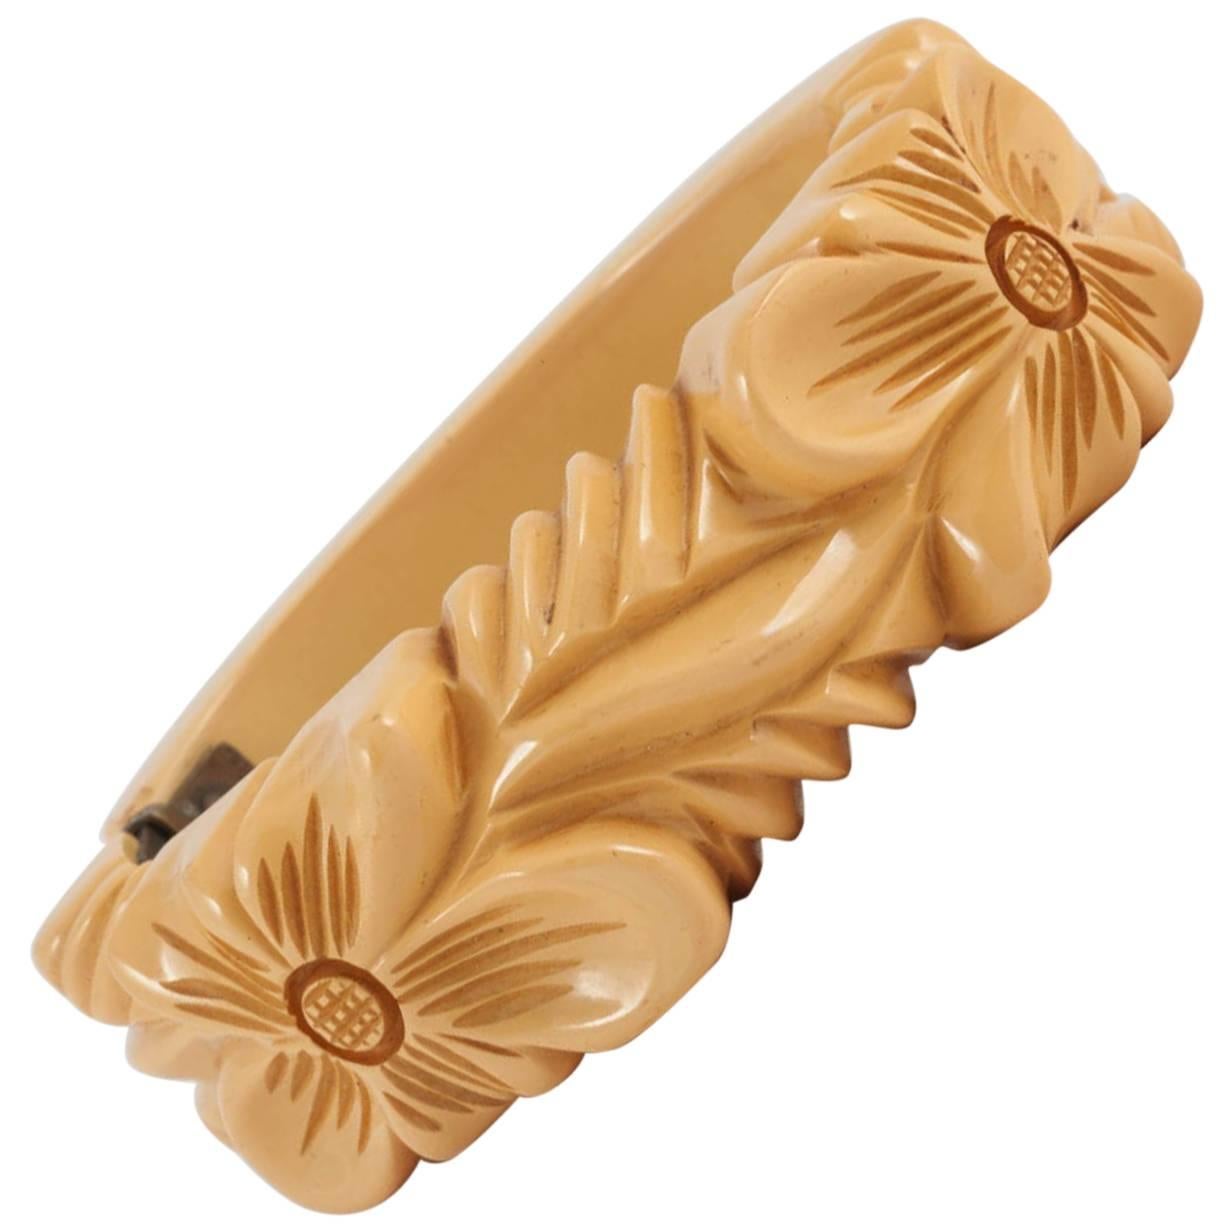 A carved cream bakelite "snapper" bangle/bracelet, with floral motif, 1930s